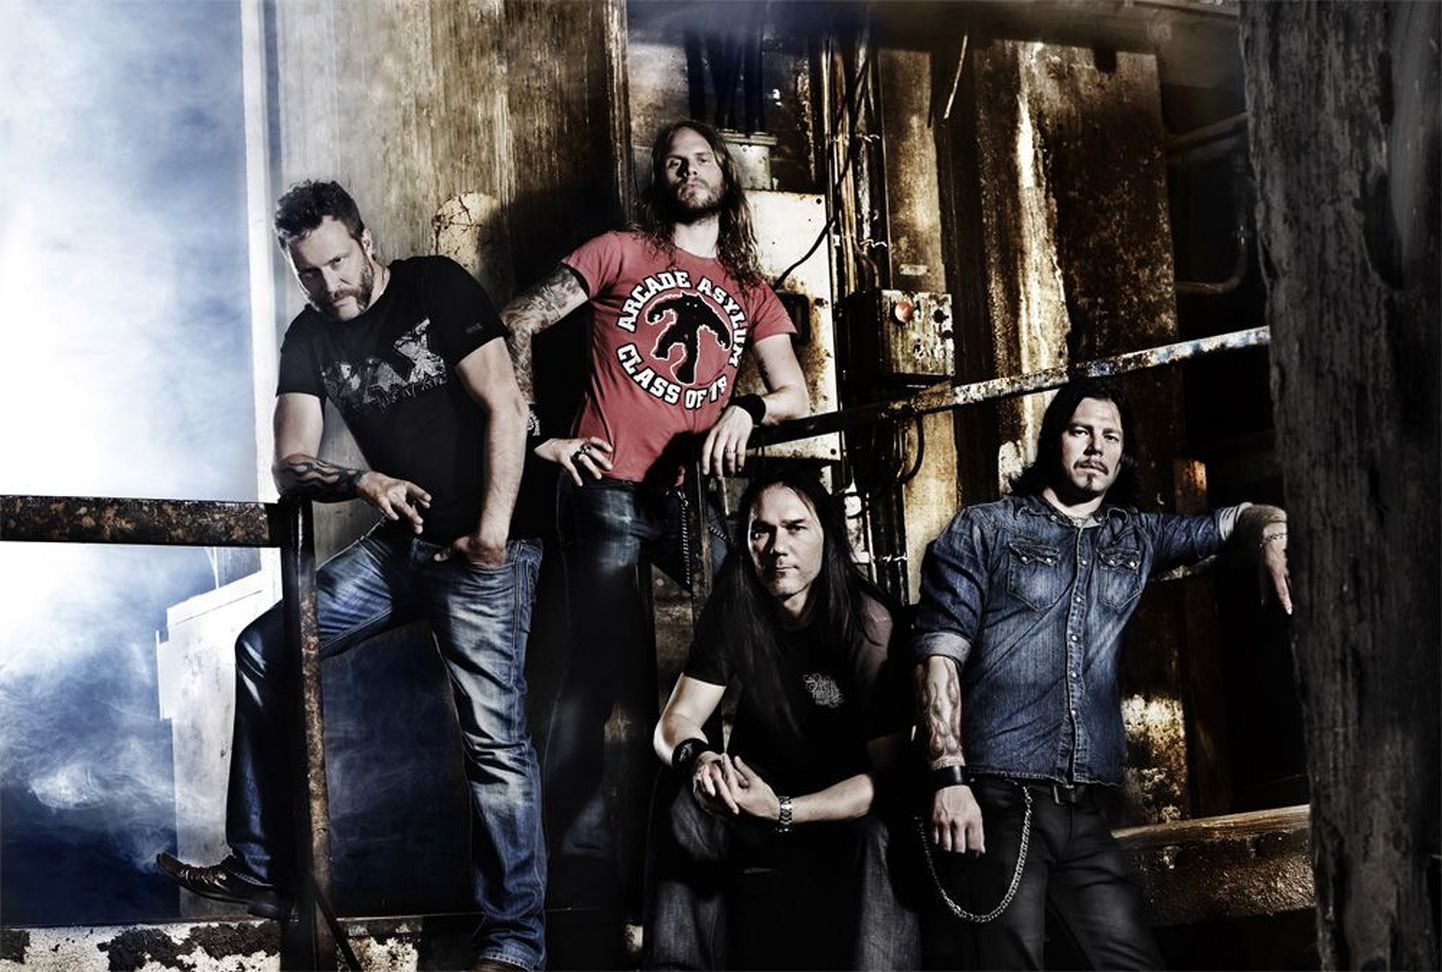 Rootsi hard rock ansambel Mustasch